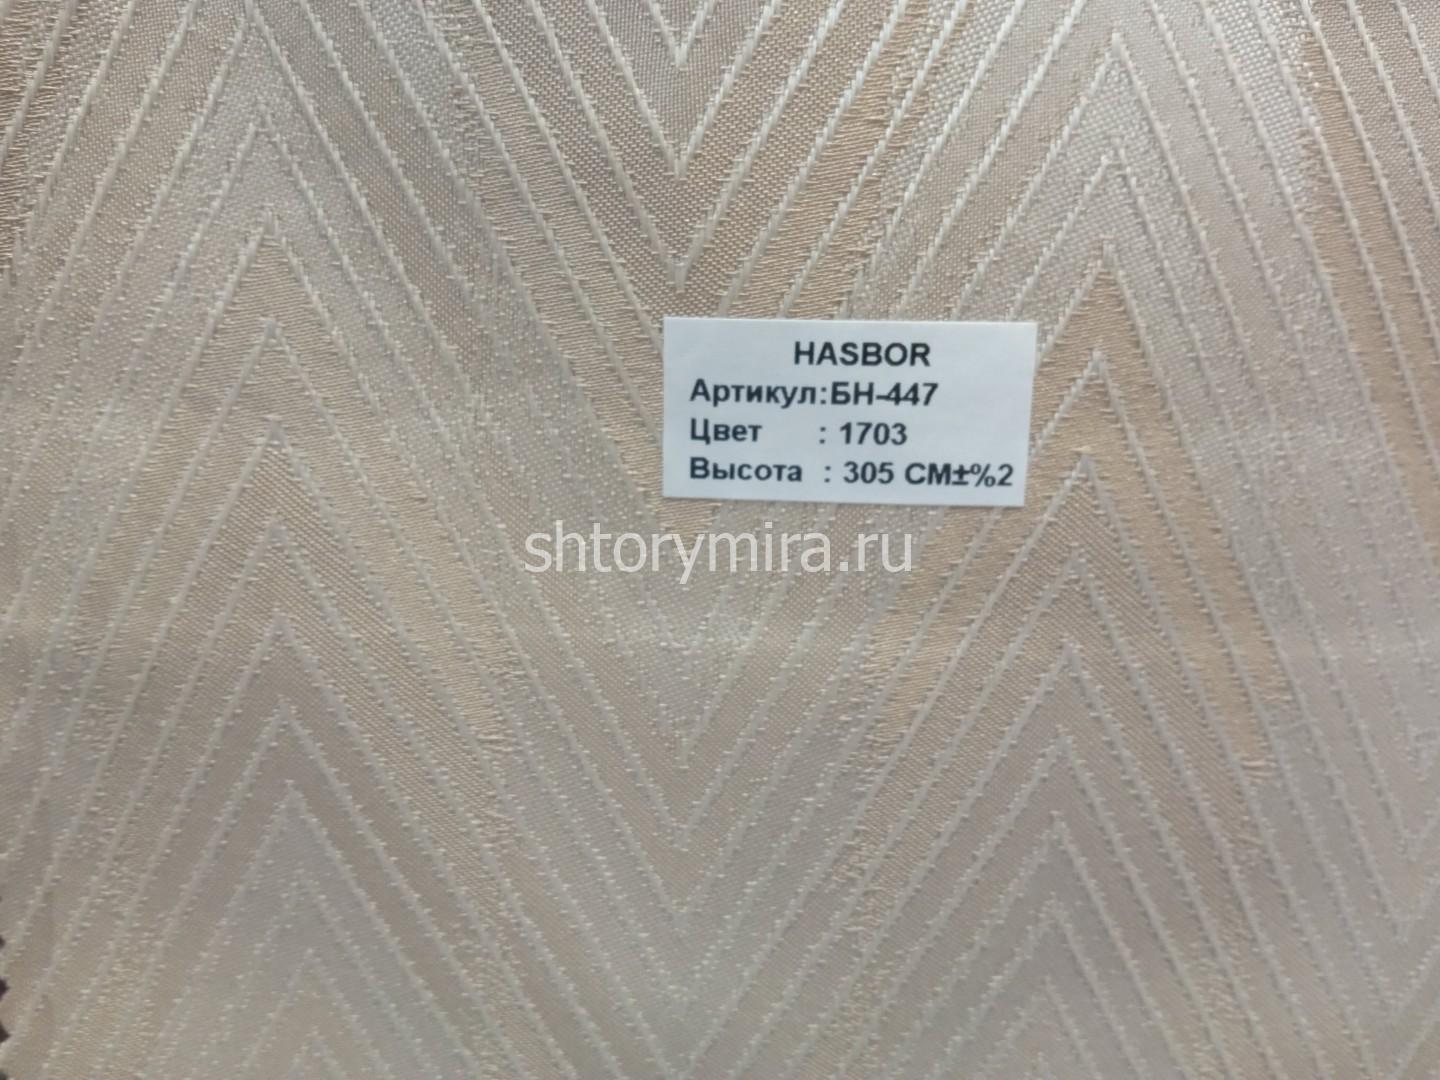 Ткань БН-447 1703 Hasbor